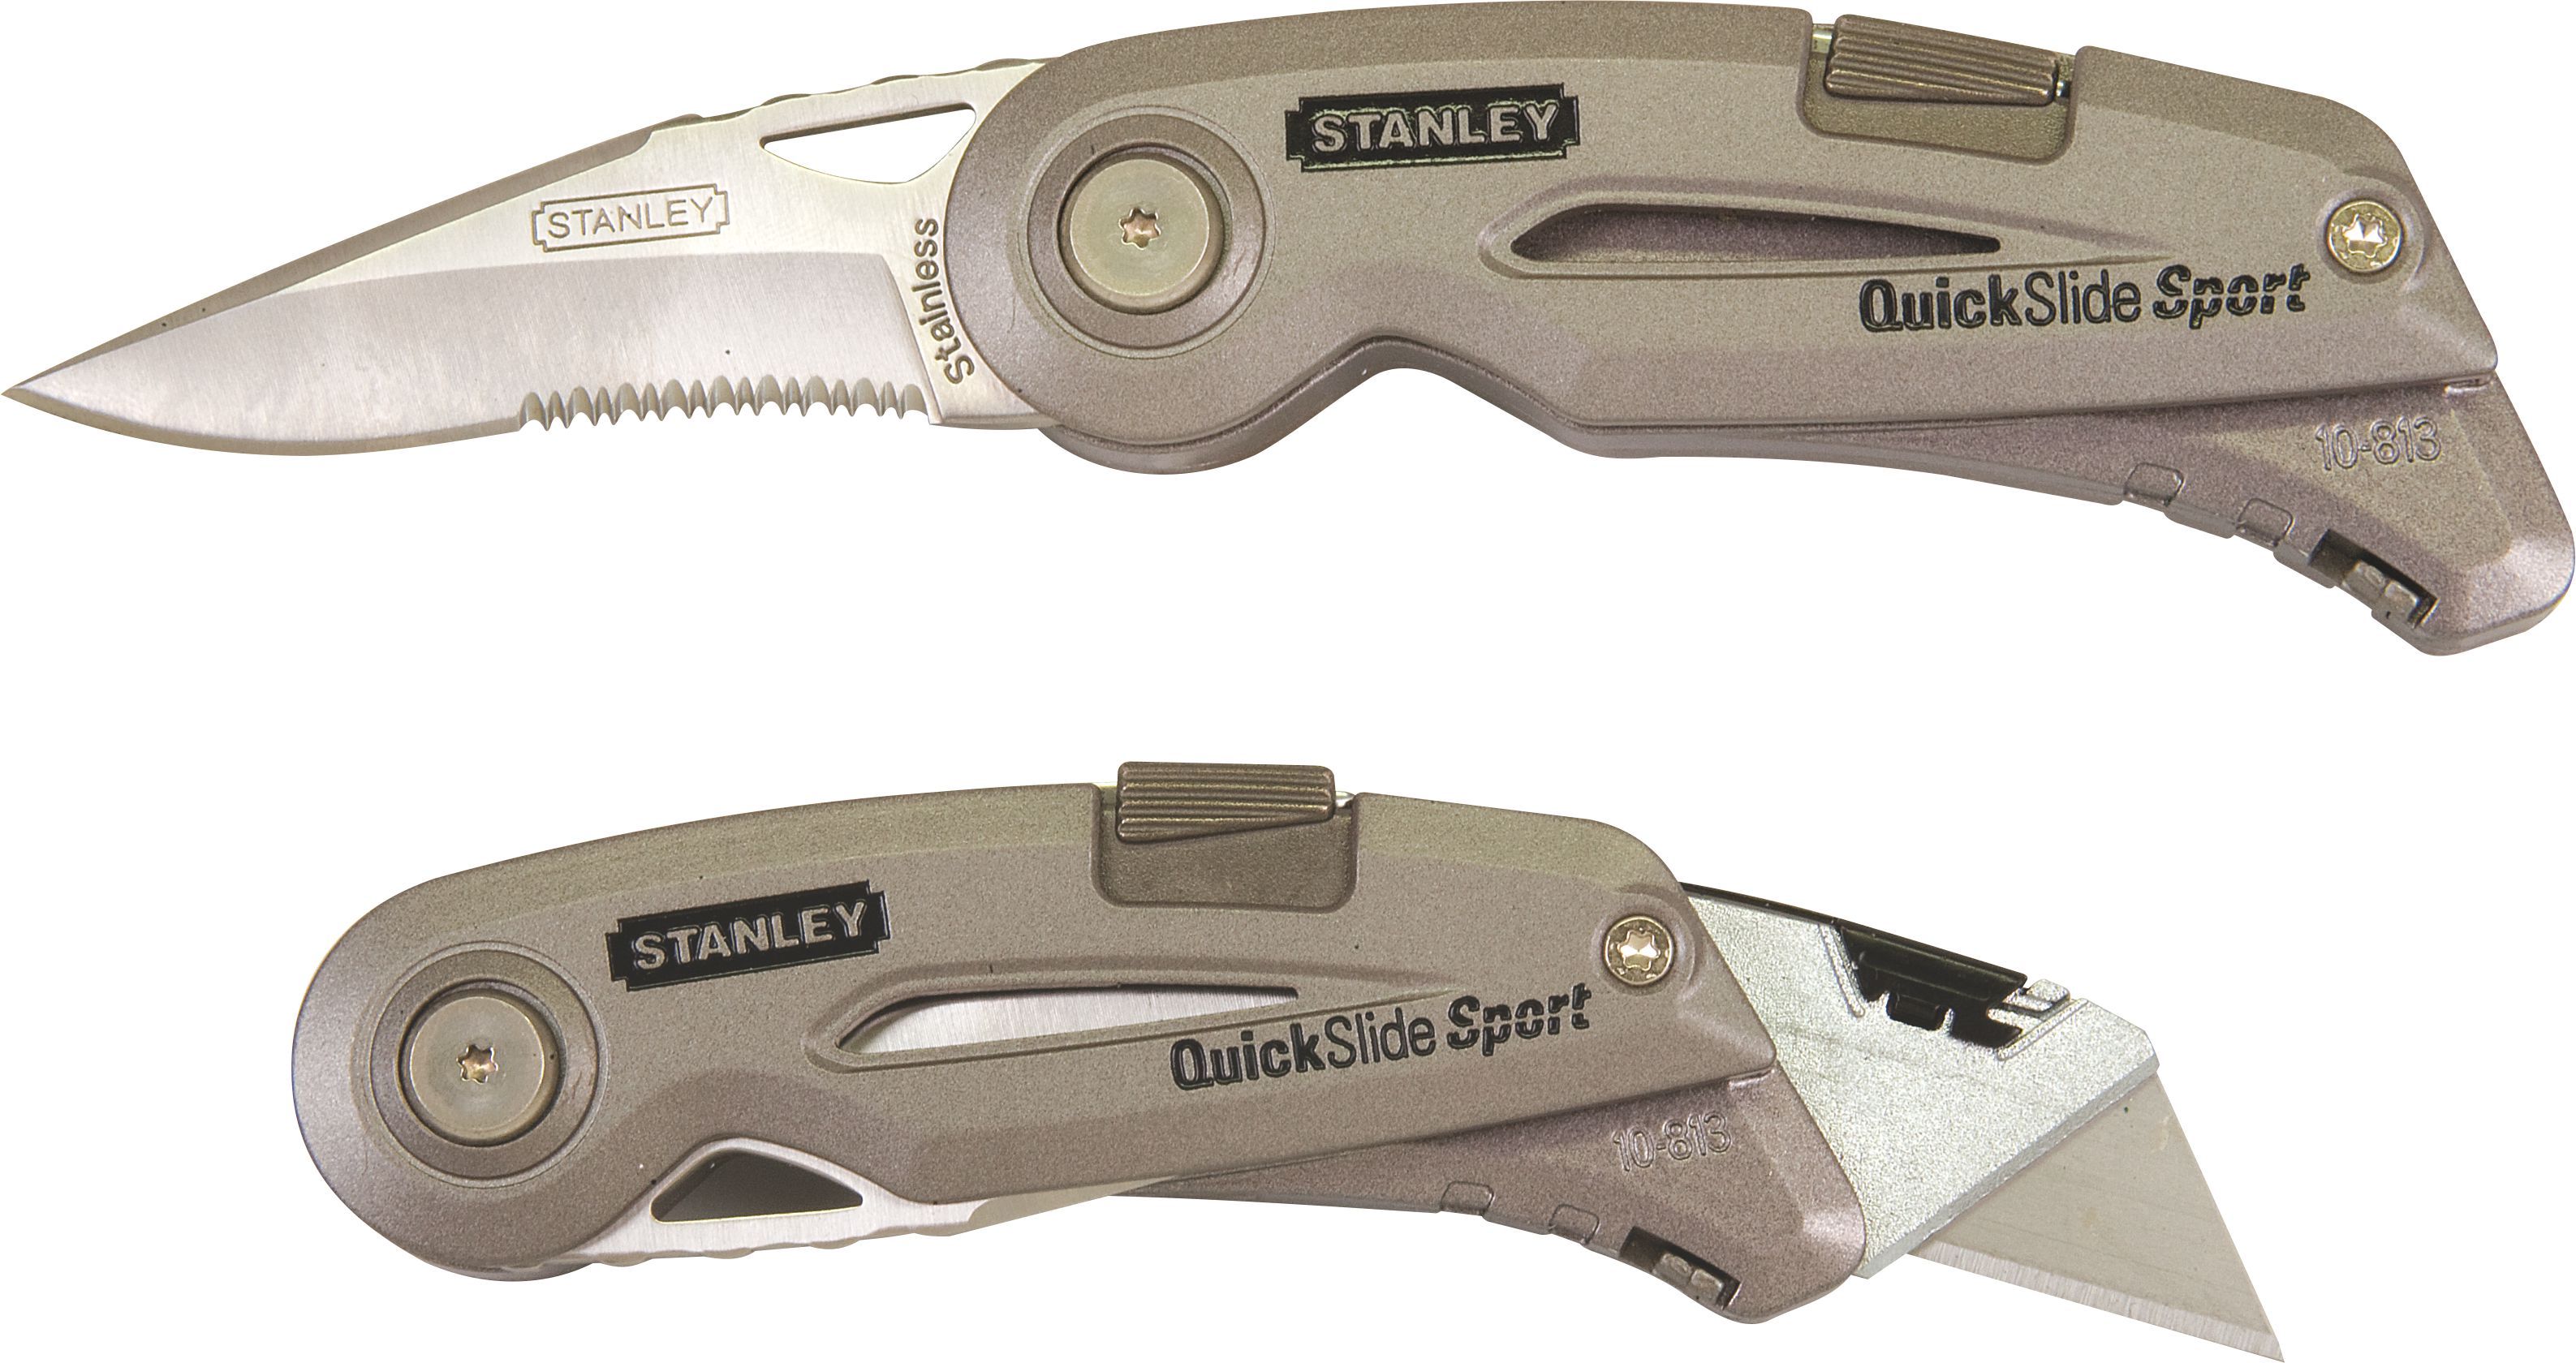 Stanley Quick-slide pocket Utility knife.